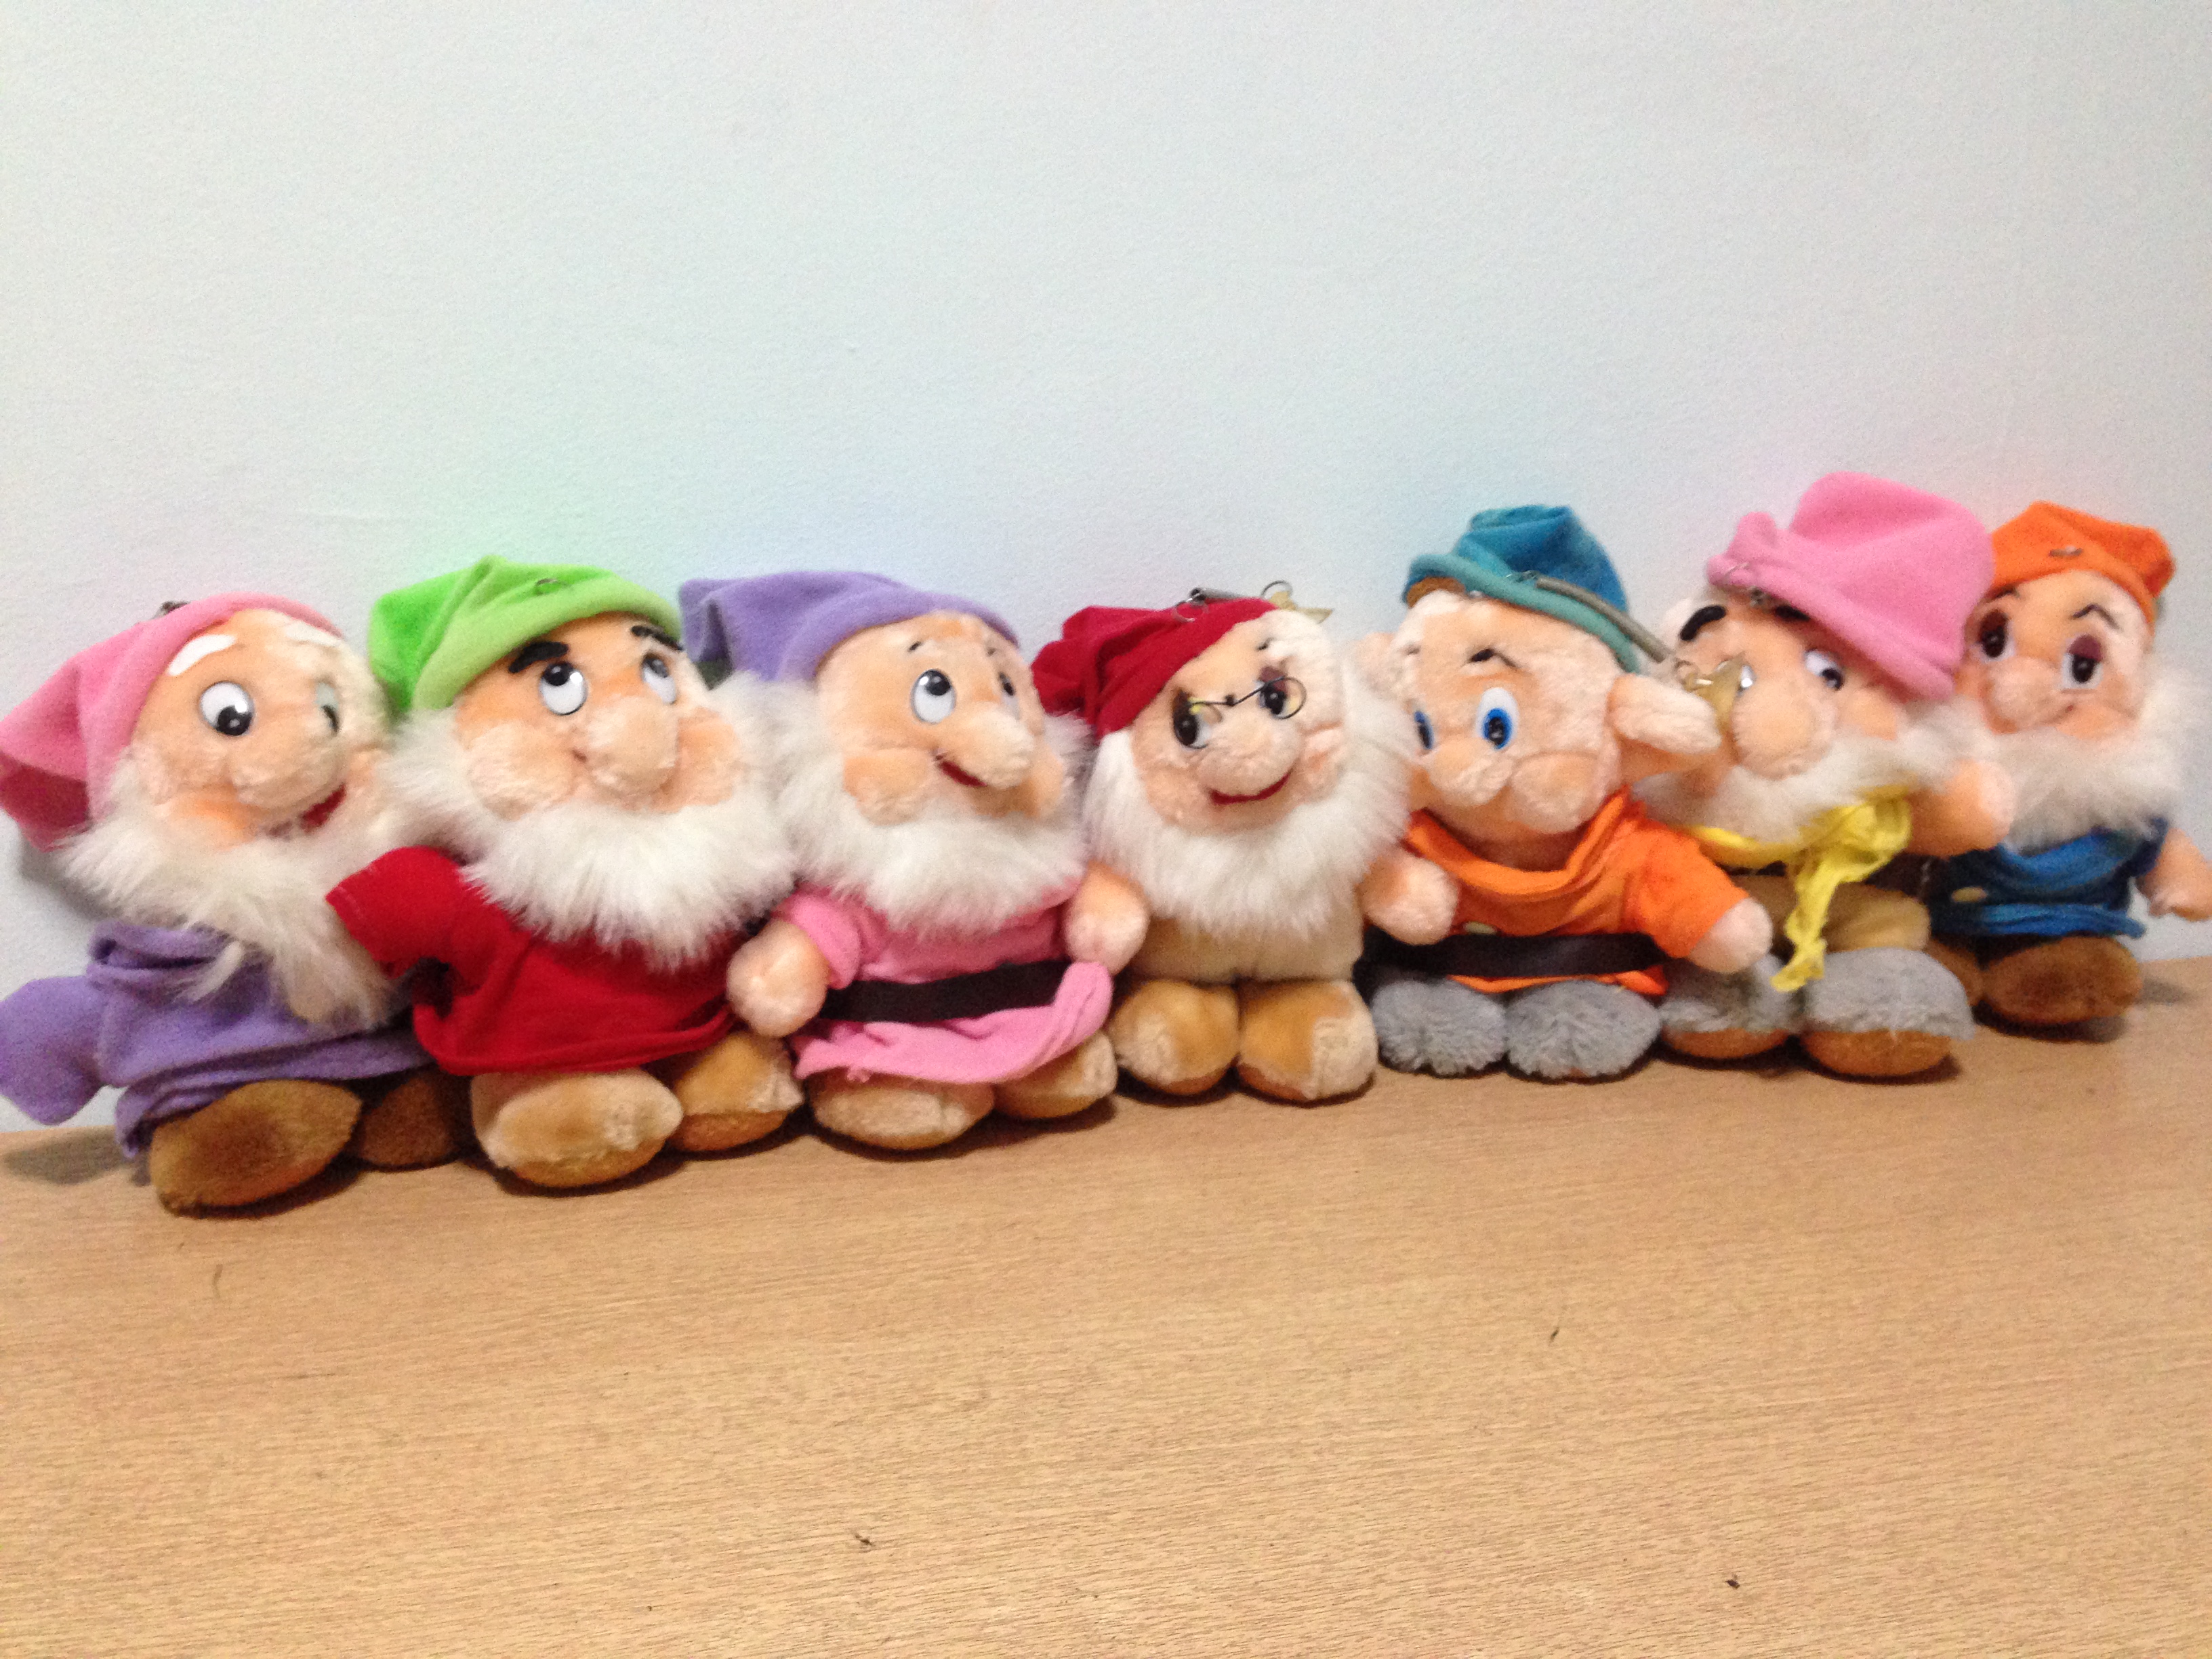 7 dwarfs stuffed animals